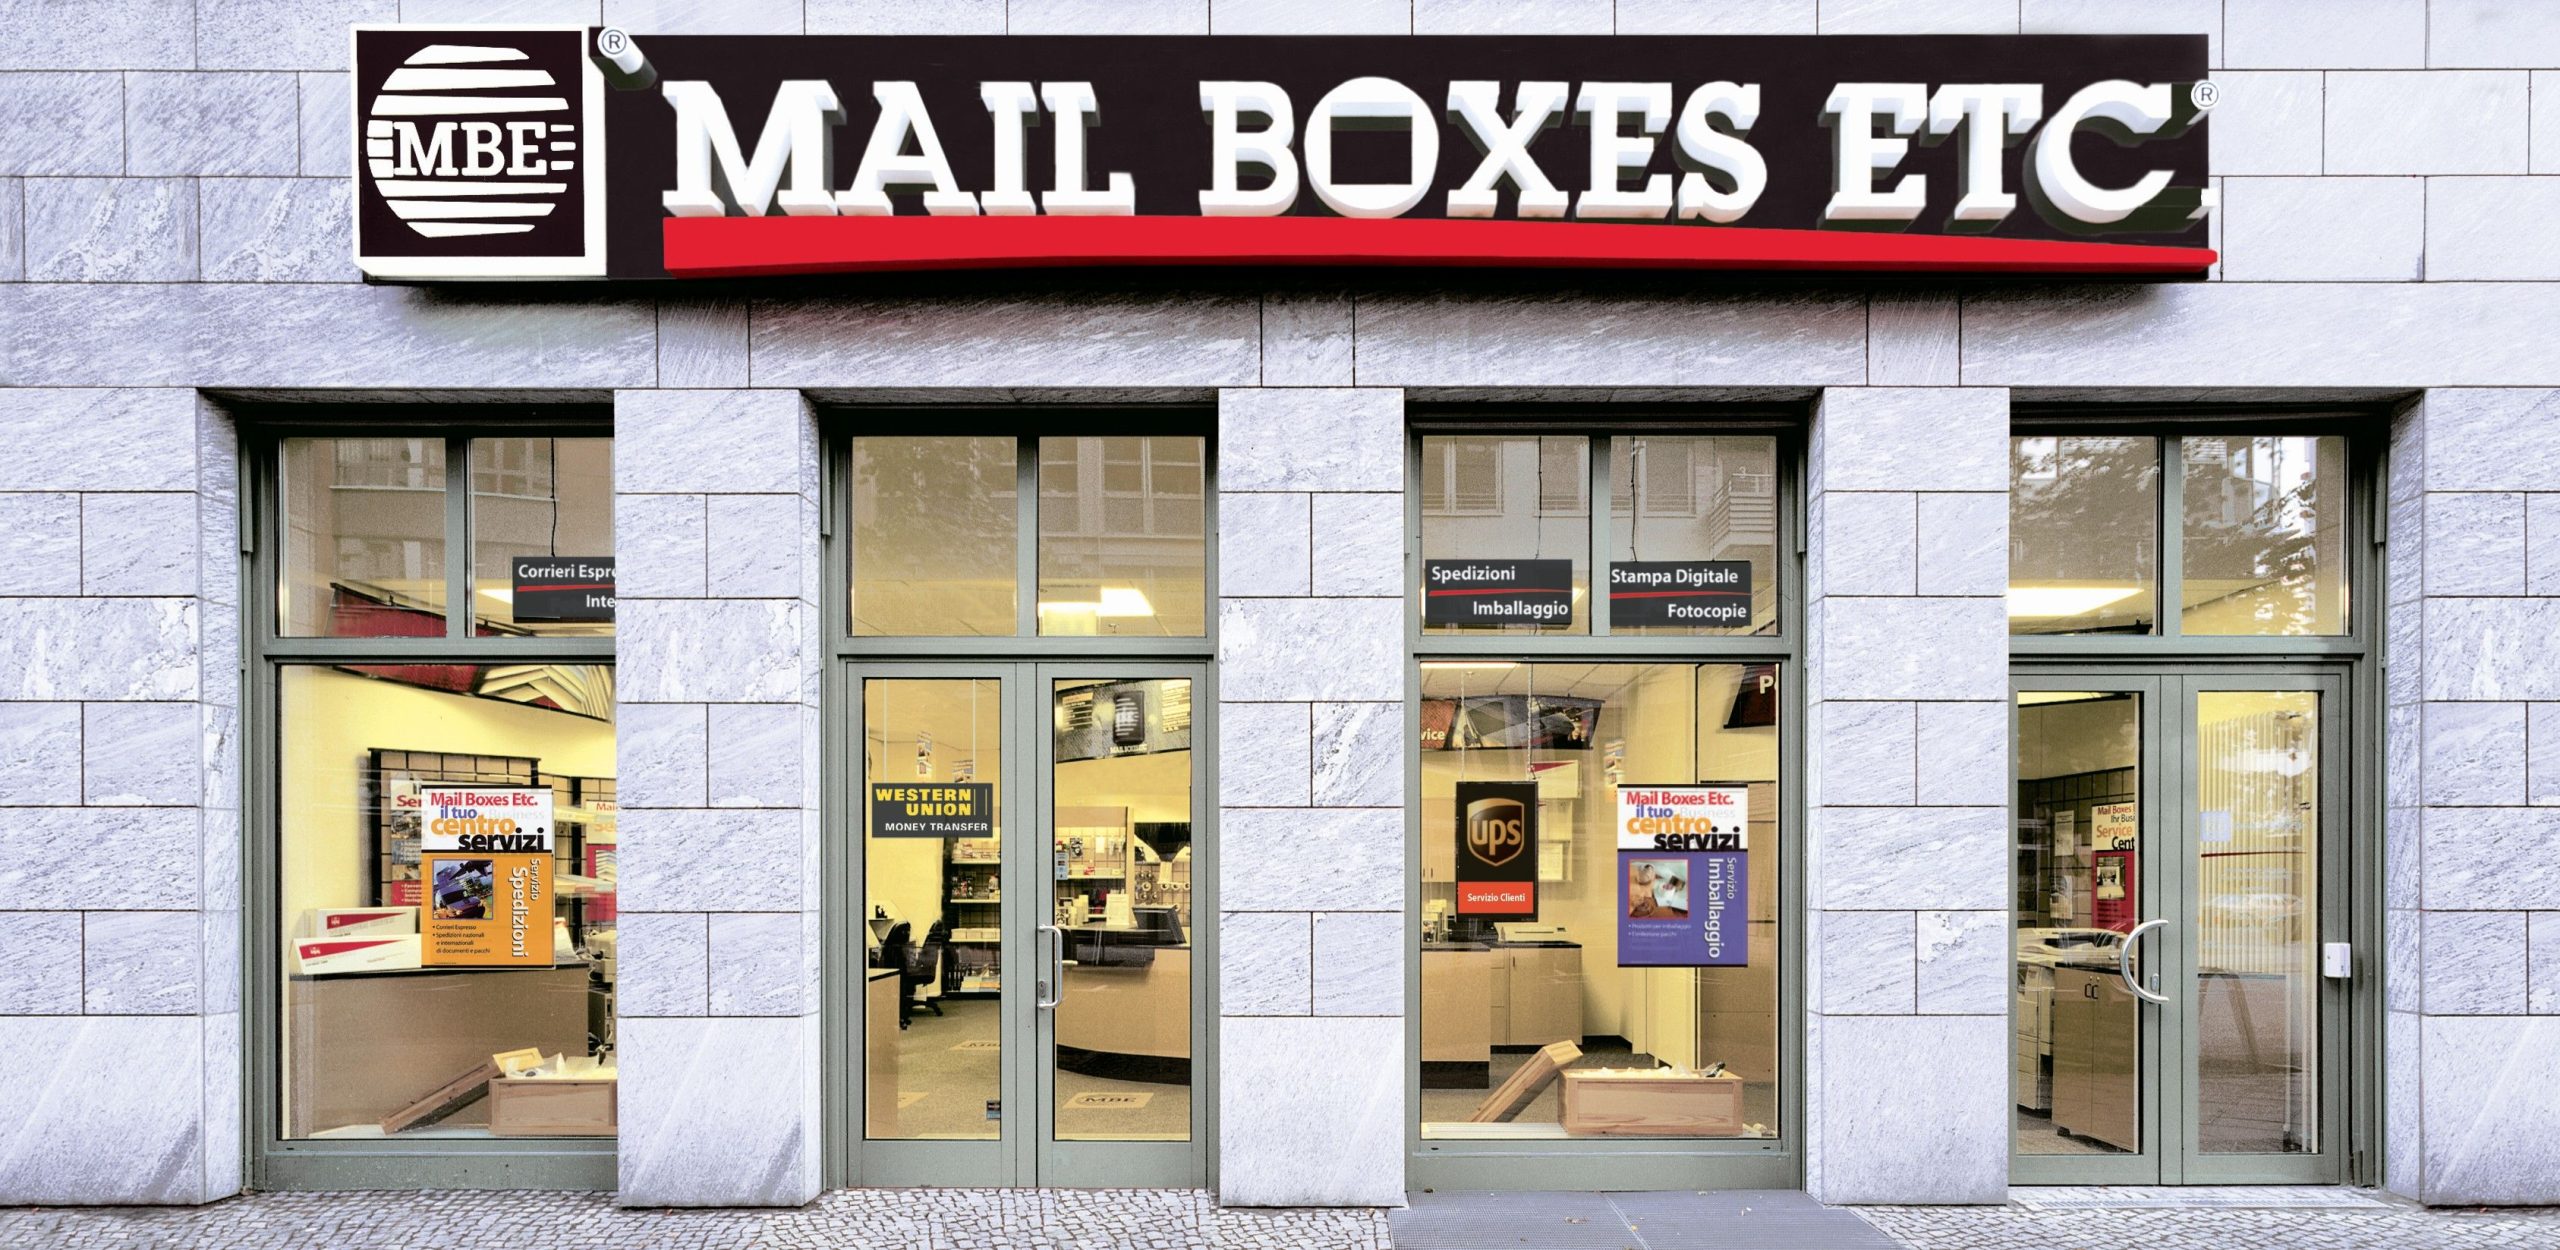 La franquicia Mail Boxes Etc. busca emprendedores que quieran desarrollar su propio negocio